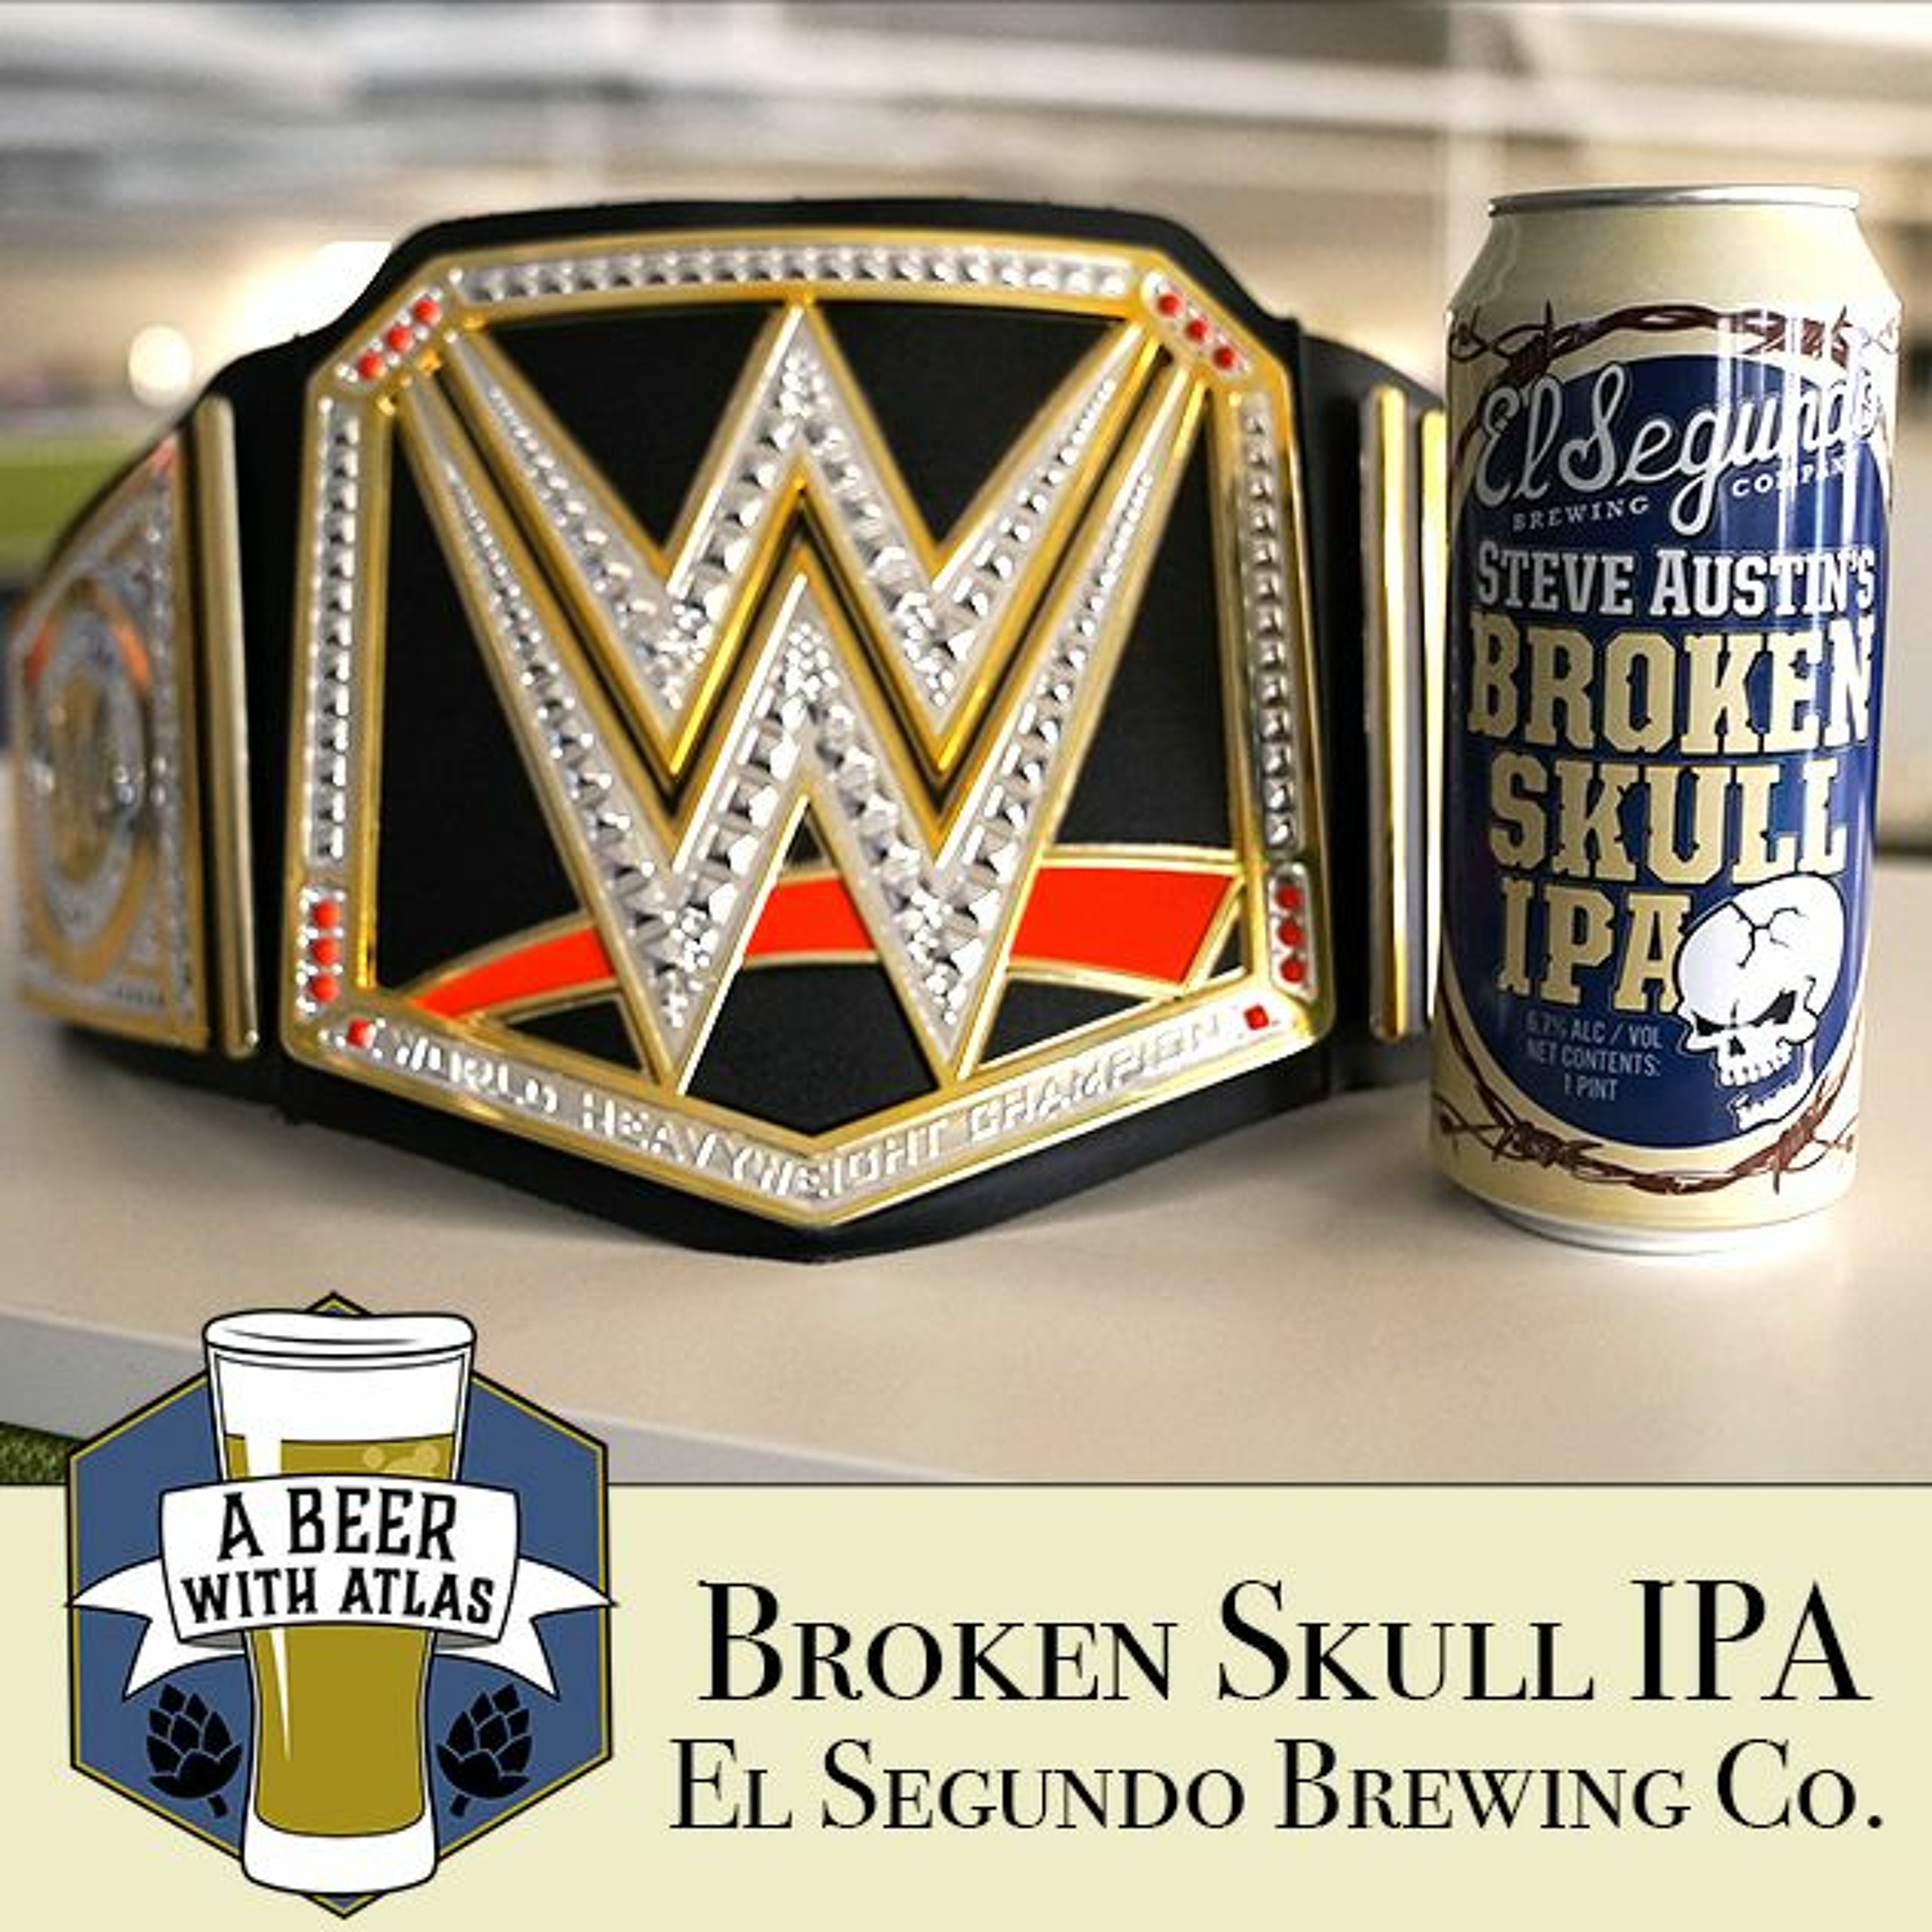 Steve Austin Broken Skull IPA - A Beer With Atlas 132 - travel nurse craft beer podcast